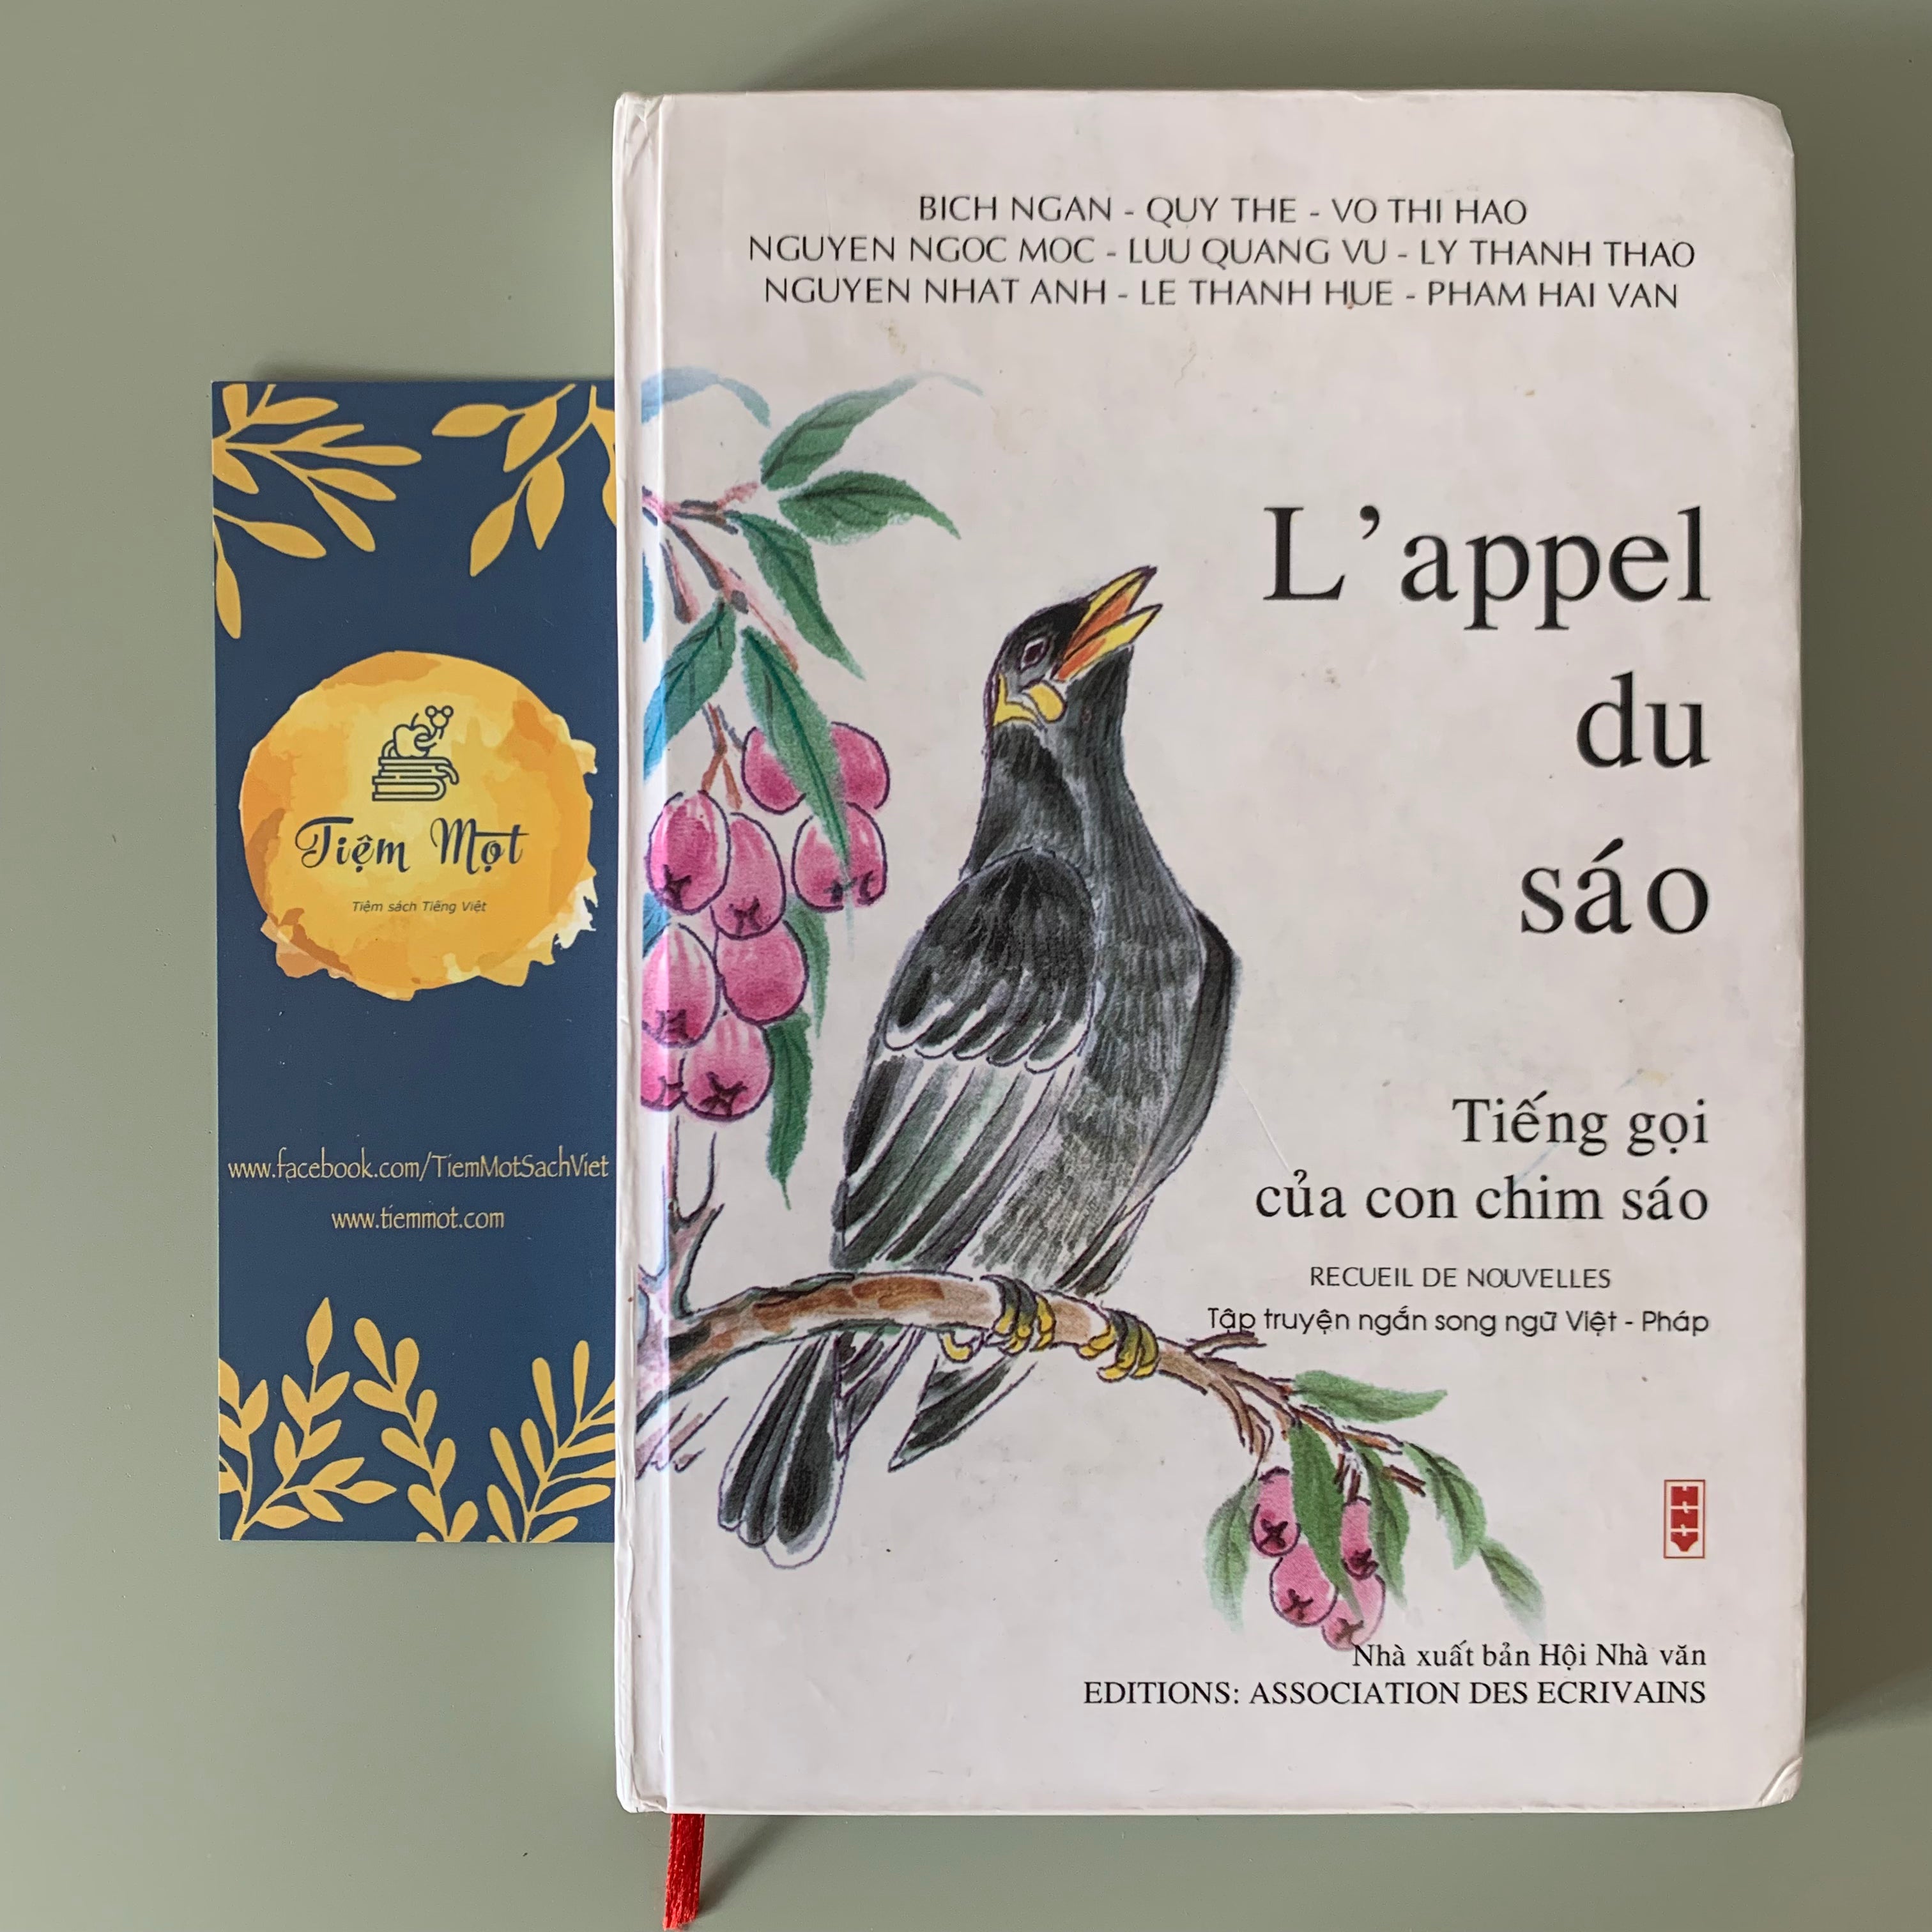 Tiếng gọi của con chim sáo - song ngữ Pháp-Việt